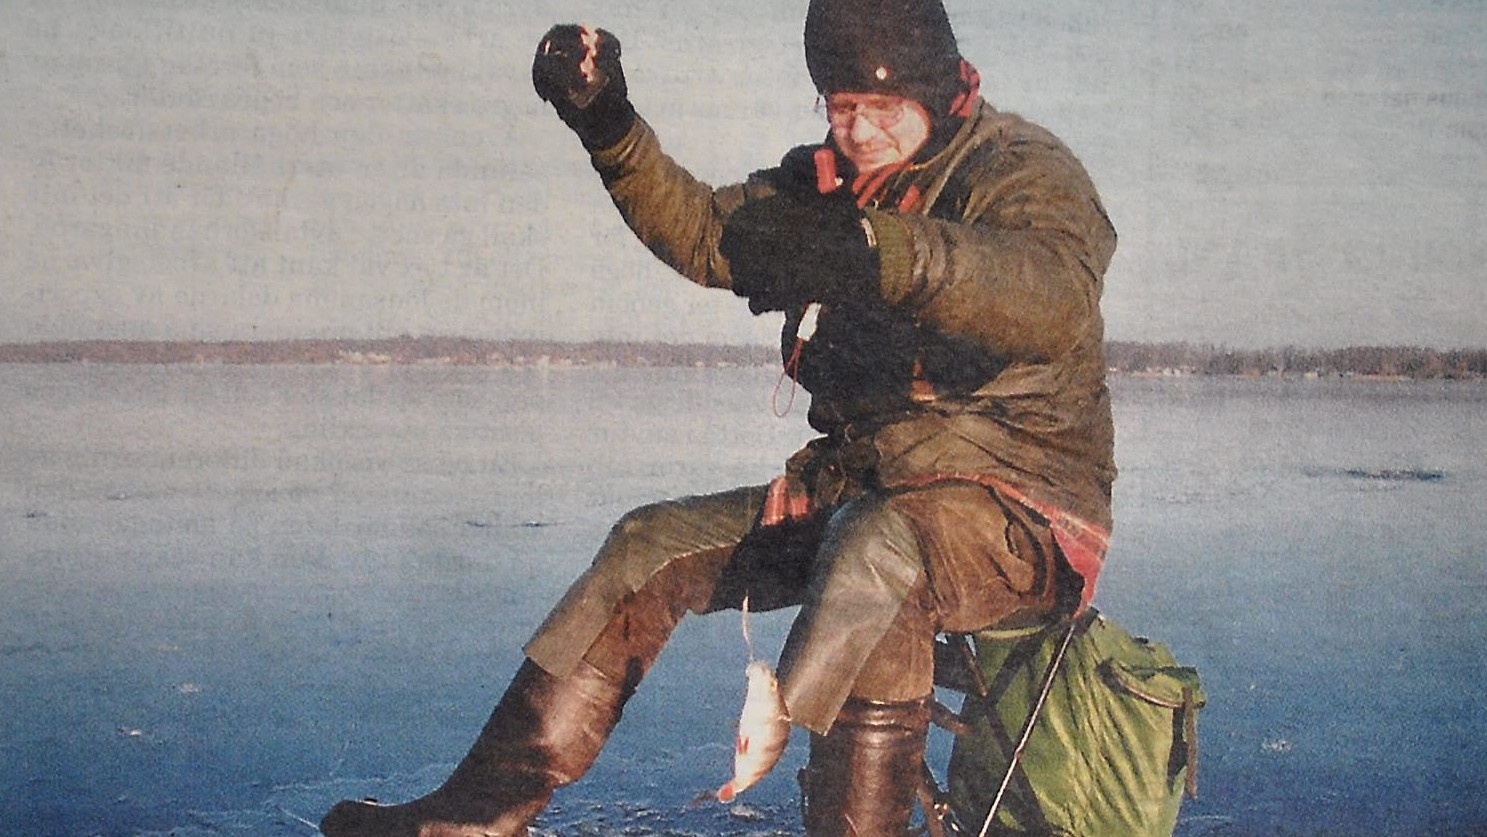 Håkan Thell i Tyringe bryr sig inte om hur stora fiskar han får. Frihetskänslan och naturen är belöning nog.
Arkiv: Stefan Sandström